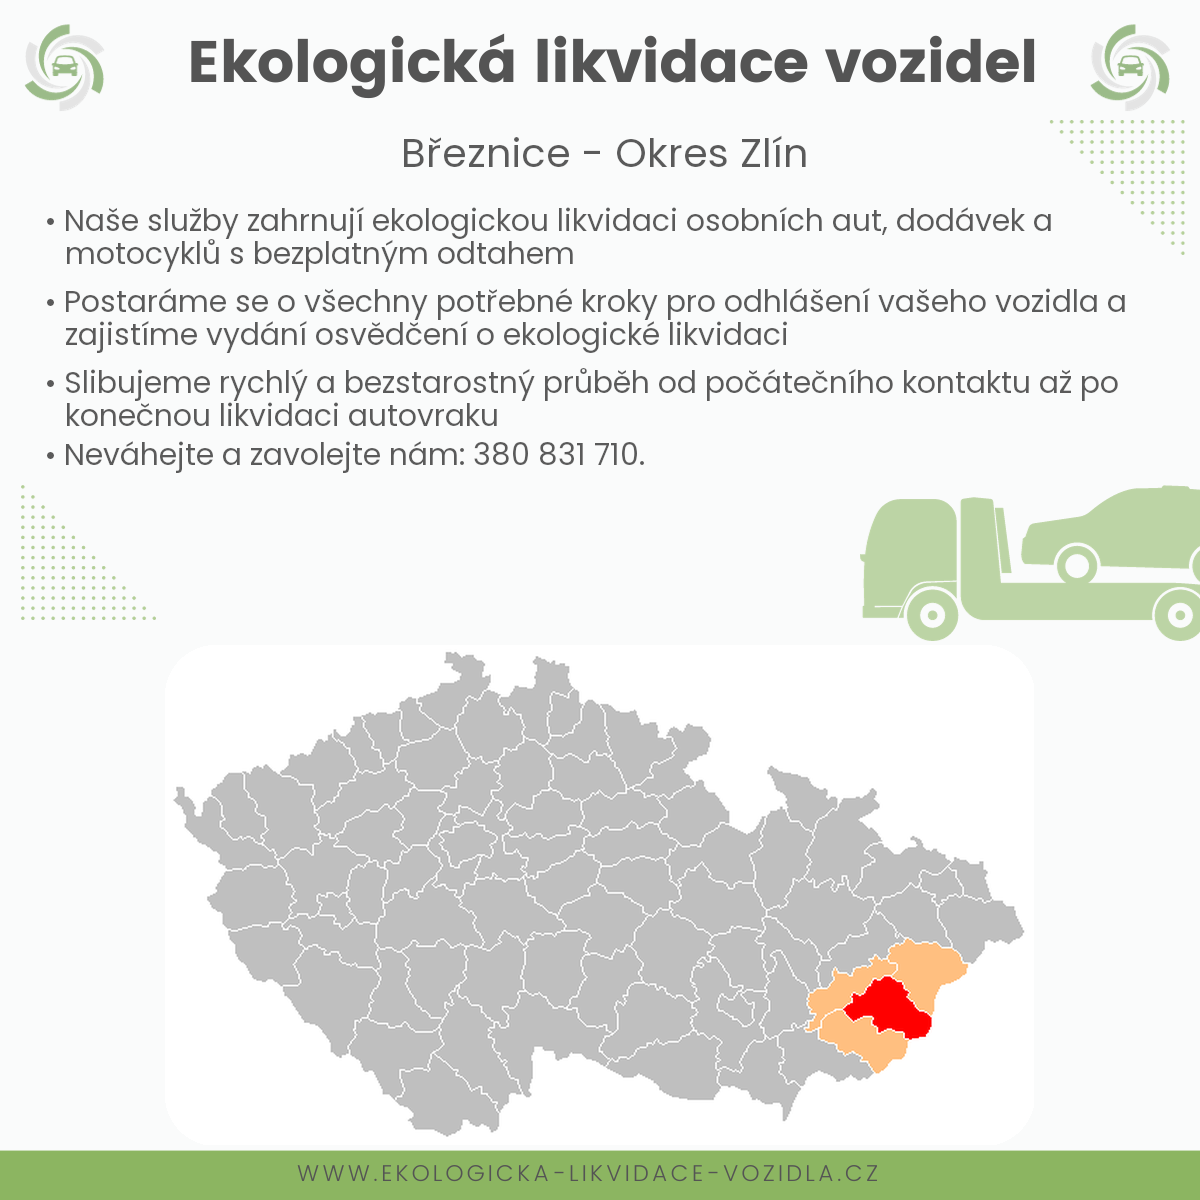 likvidace vozidel - Březnice